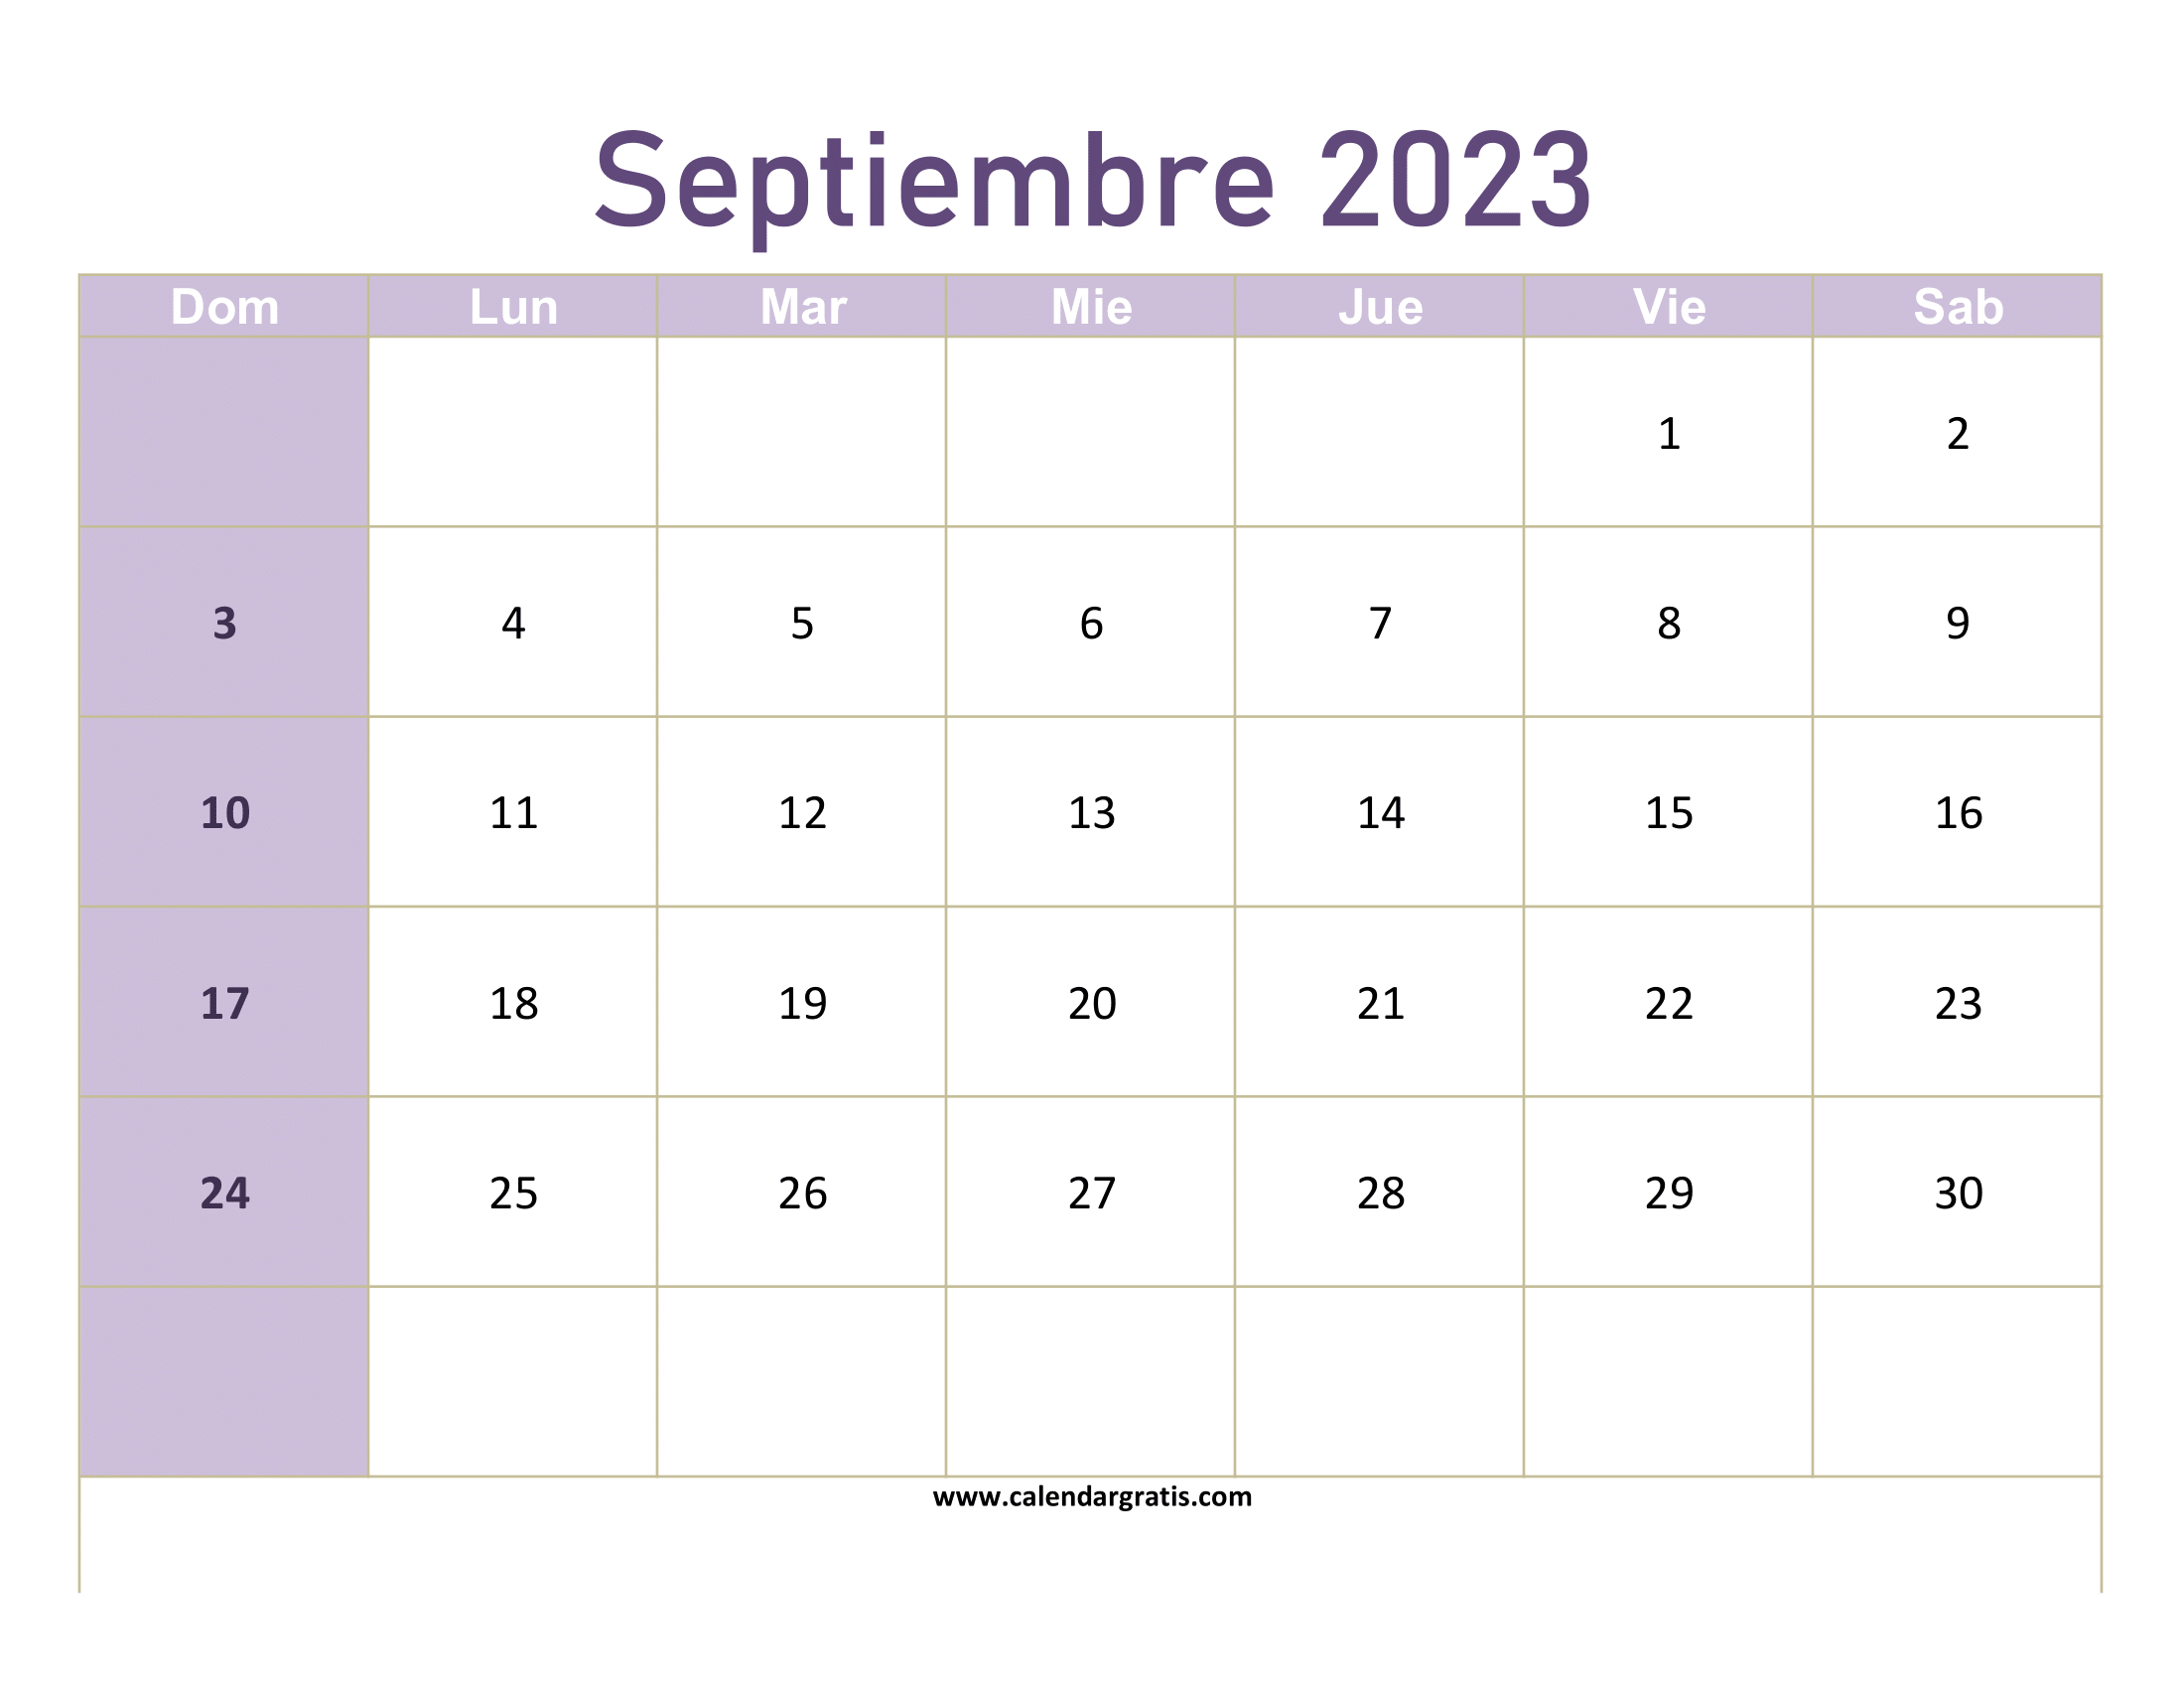 Un calendario de pared para el mes de septiembre de 2023, diseñado para ser impreso y colgado